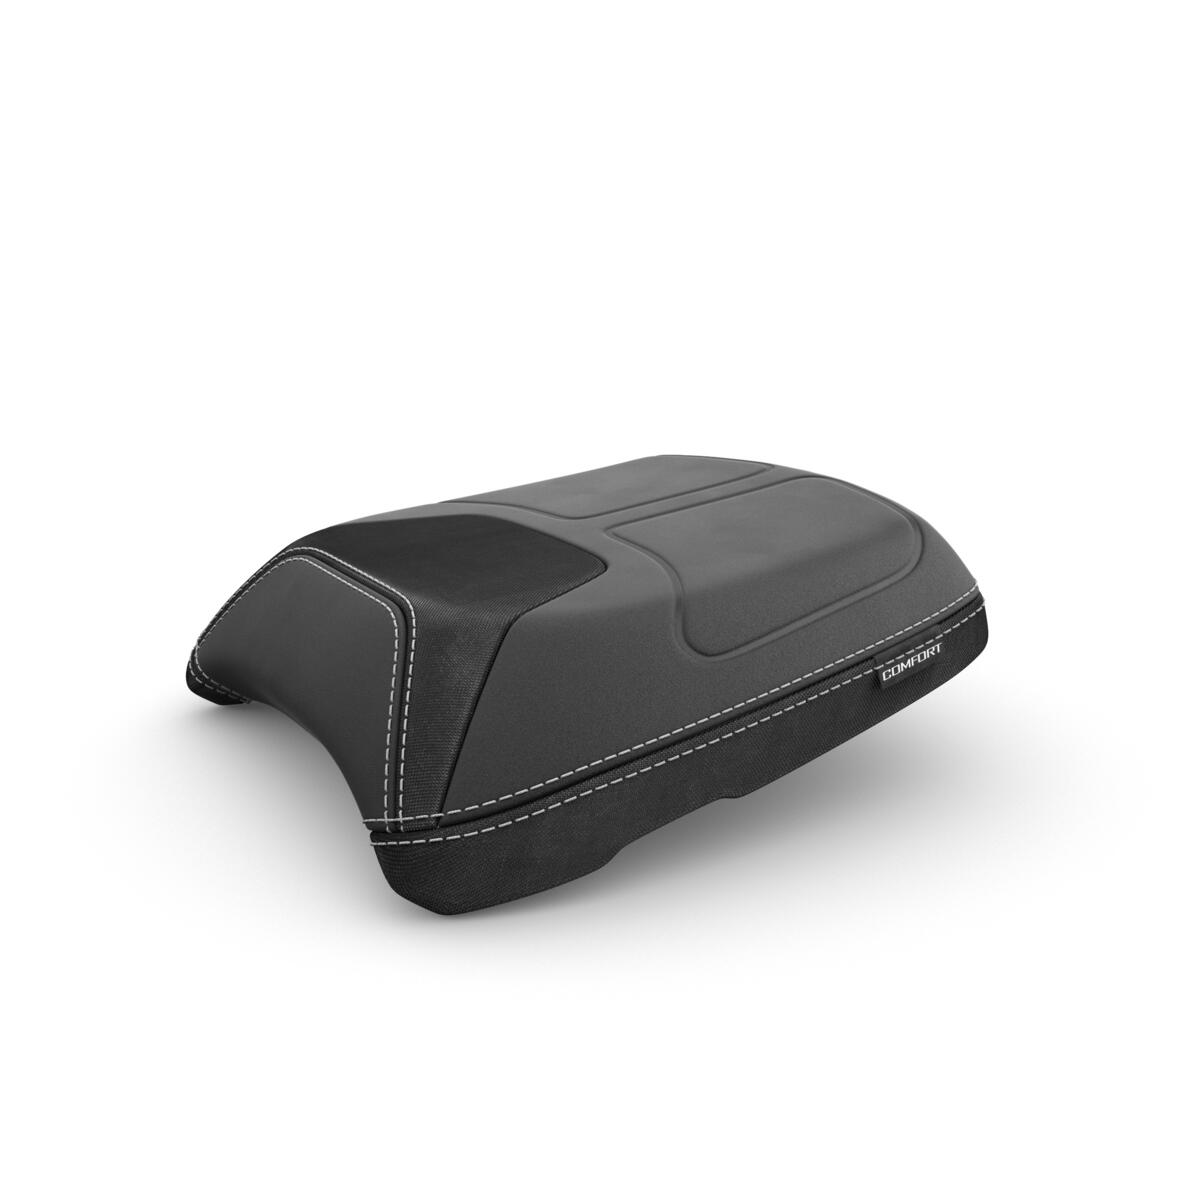 Comfortzadel voor passagier ontworpen om het rijcomfort over lange afstanden op de TRACER 9 te verhogen. De stevige schuimrubberen basis en de zachte opbergzakken zorgen ervoor dat je optimaal samen van toertochten kunt genieten.